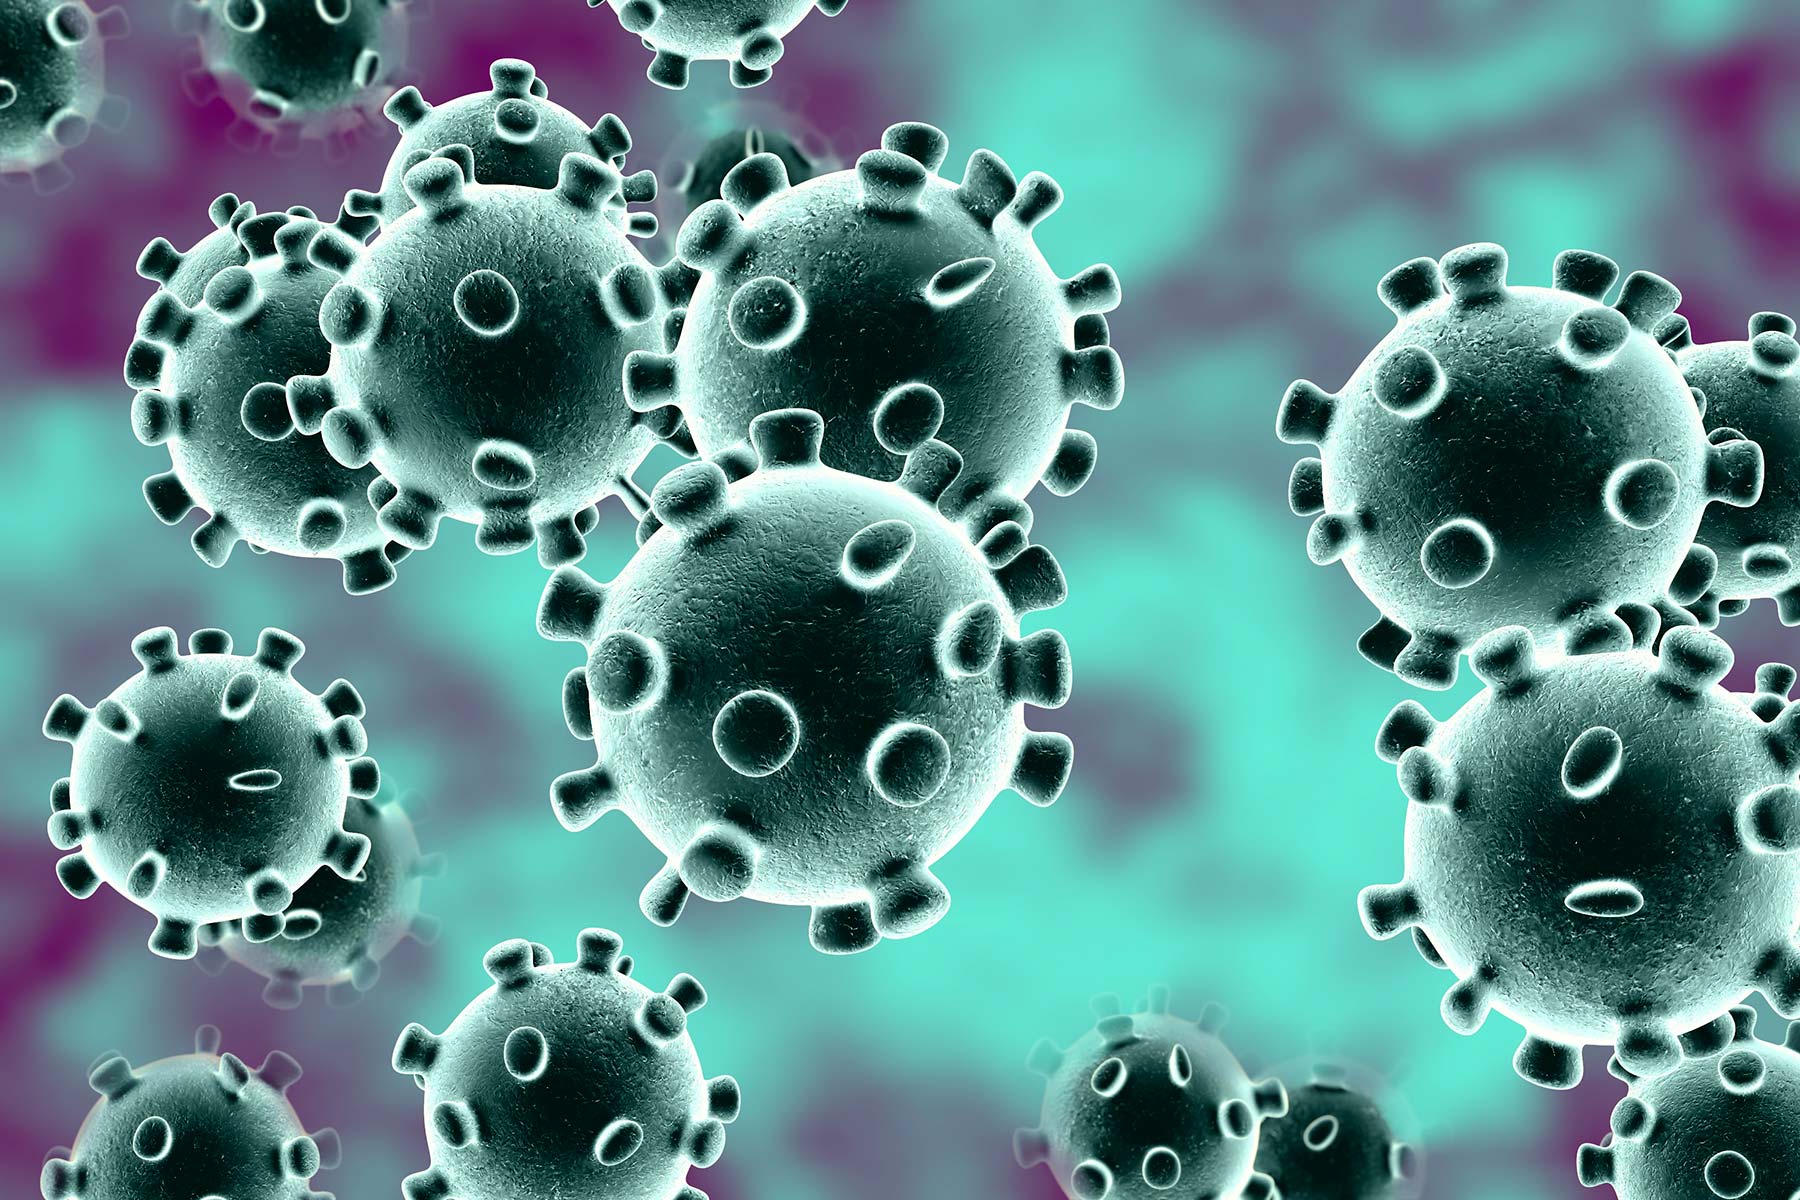 Infodemia, frika në kohën e Coronavirusit